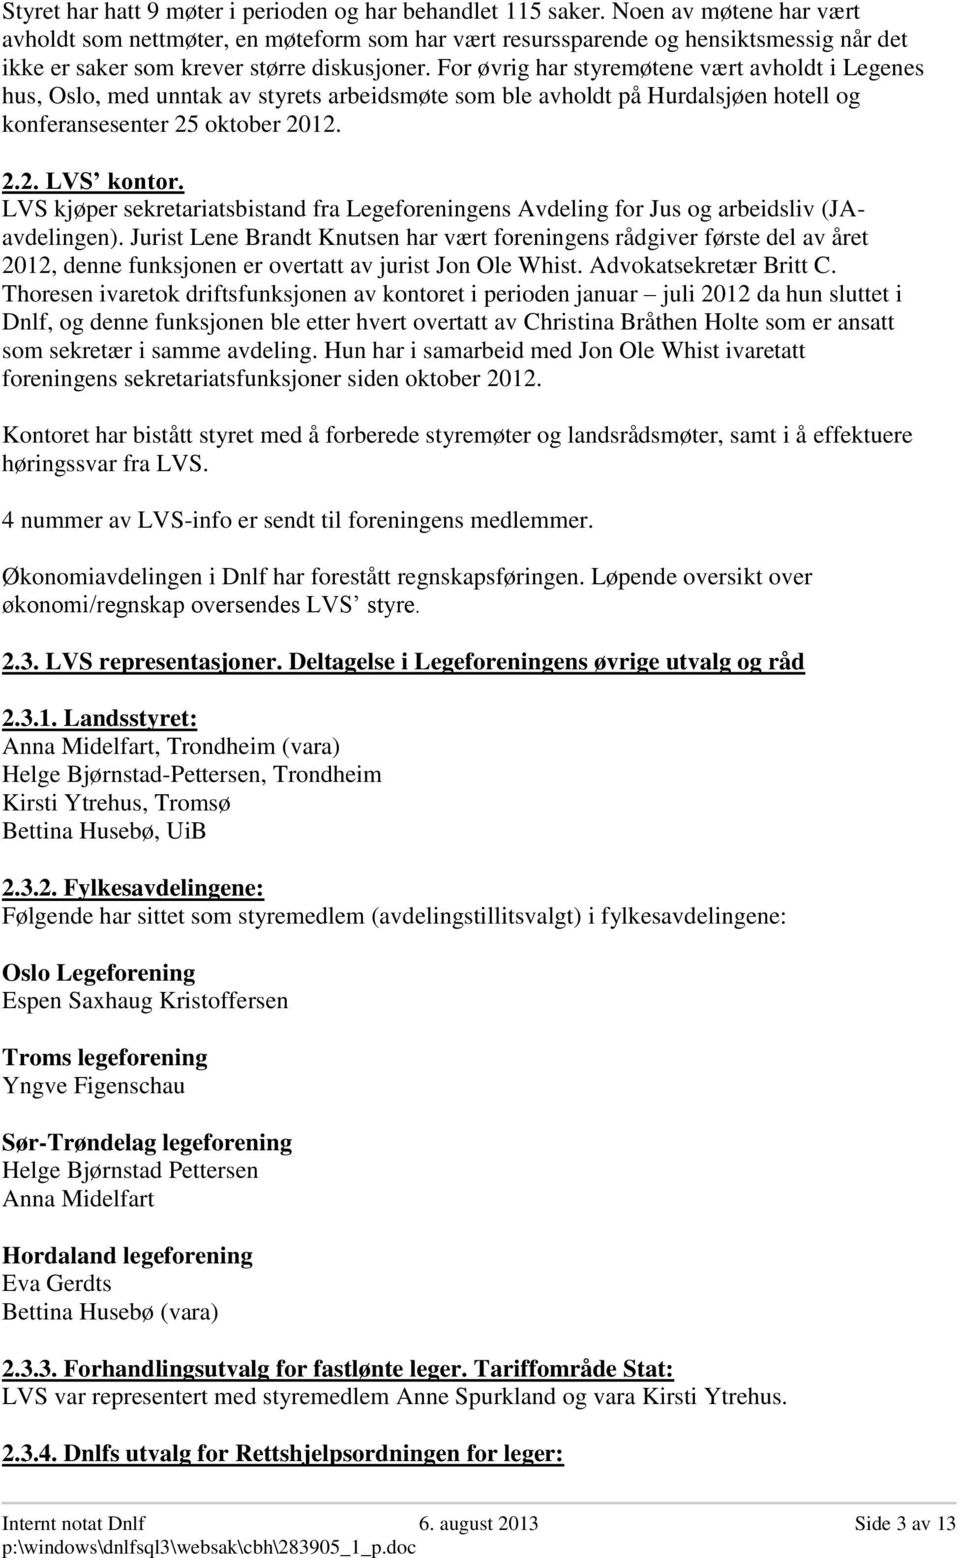 For øvrig har styremøtene vært avholdt i Legenes hus, Oslo, med unntak av styrets arbeidsmøte som ble avholdt på Hurdalsjøen hotell og konferansesenter 25 oktober 2012. 2.2. LVS kontor.